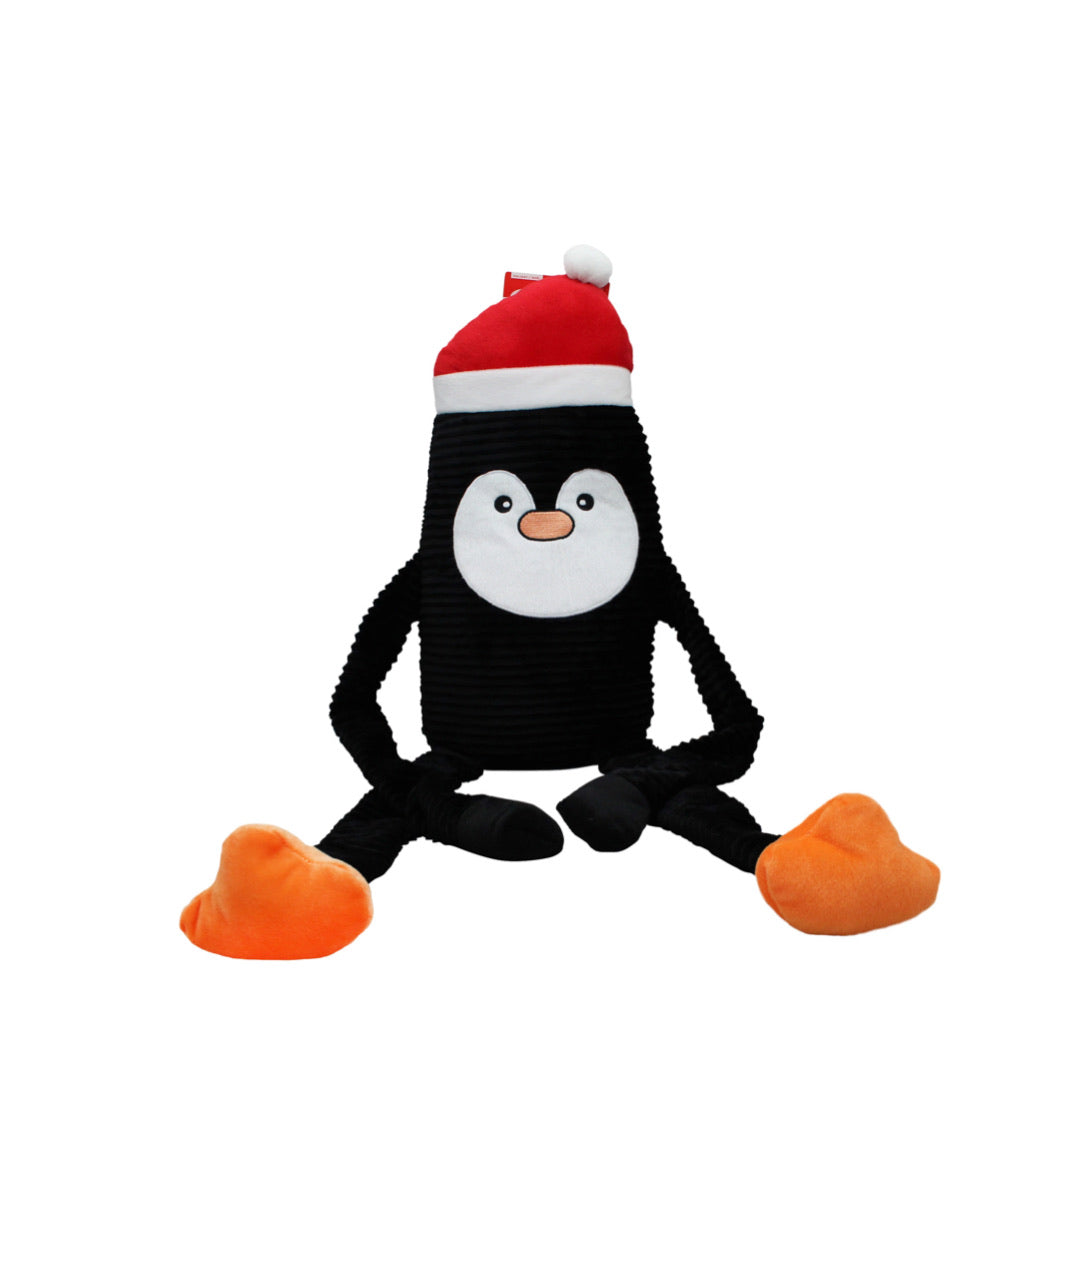 Zippypaws Holiday Crinkle - Penguin Small Dog Toy